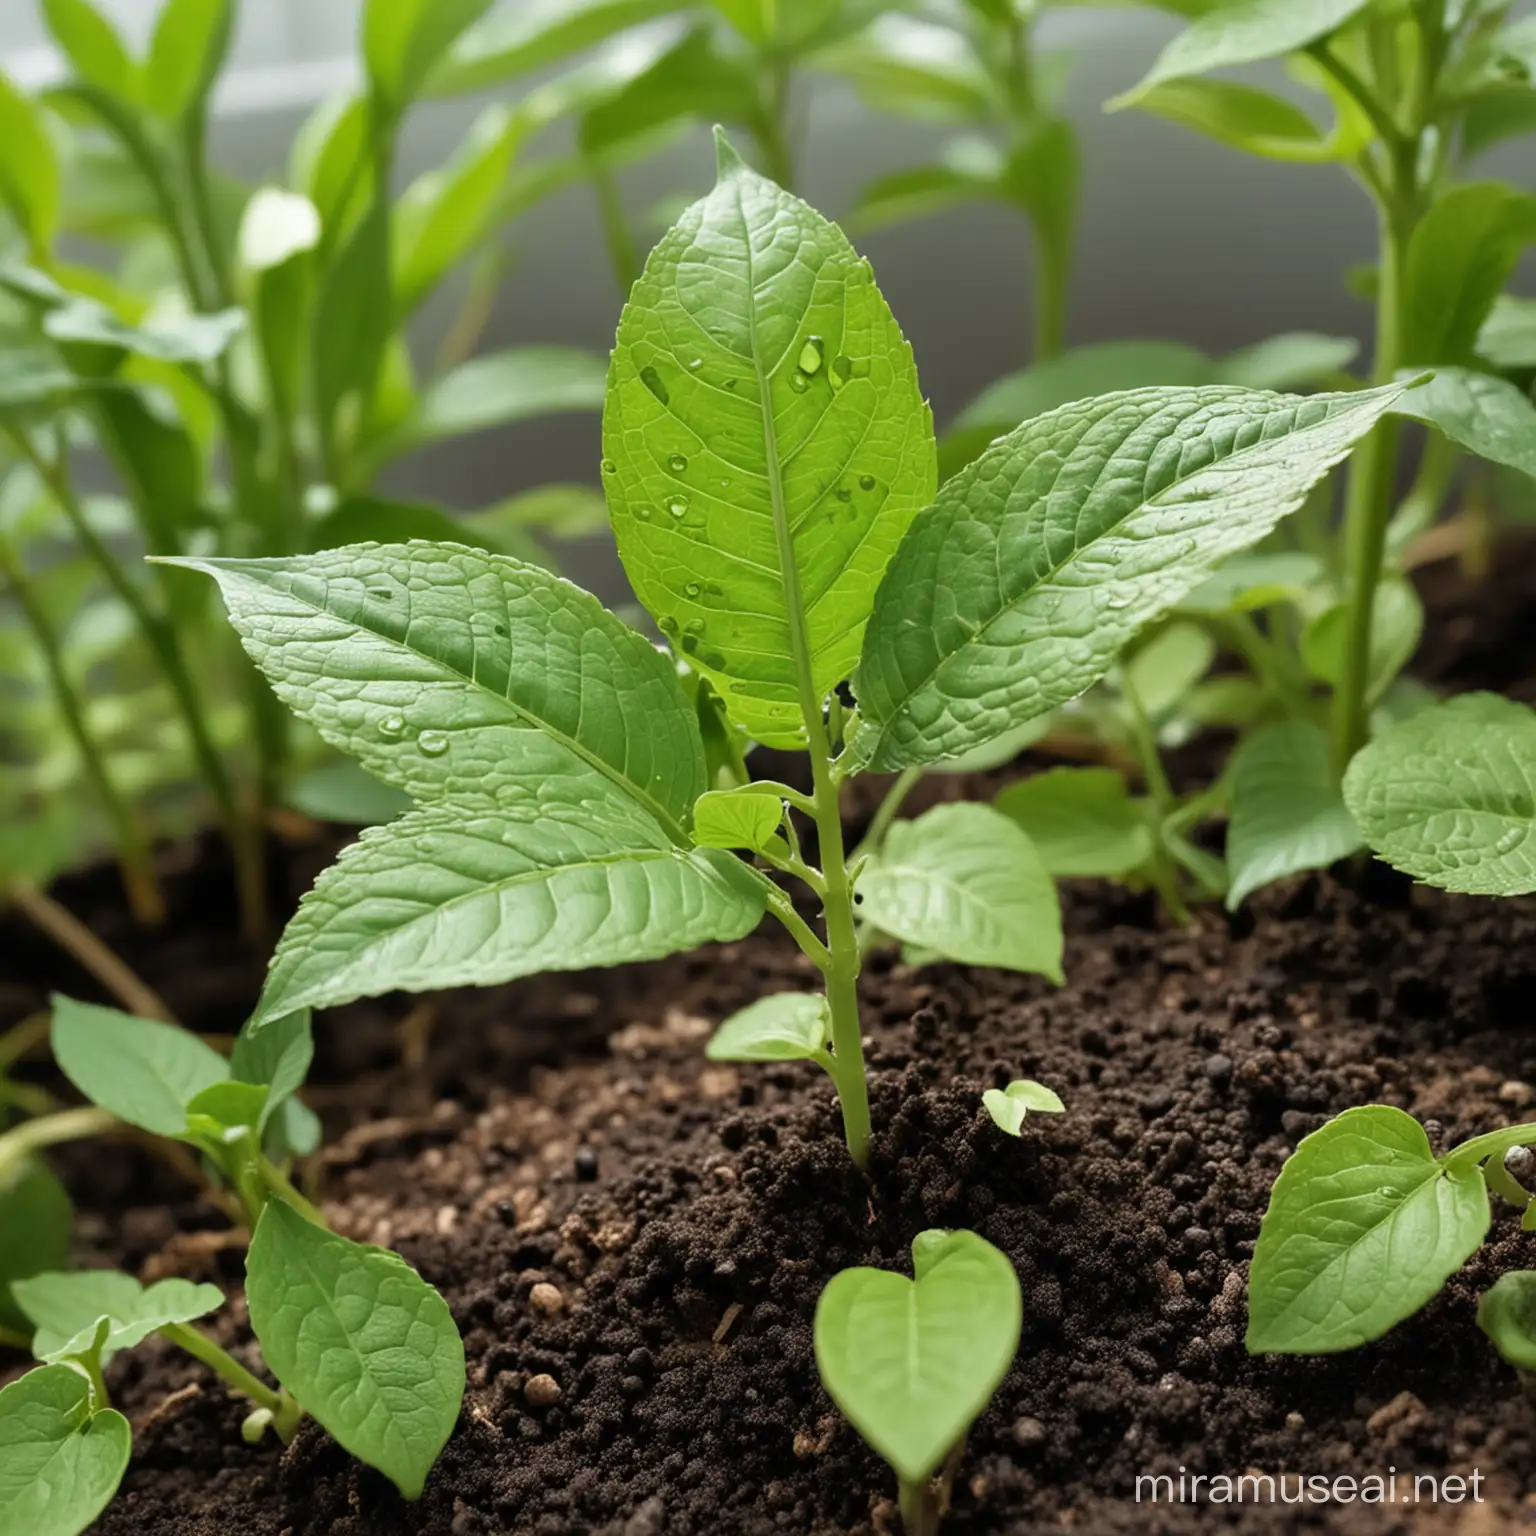 植物生长过程中,影响其生长发育以及自身机制的重要因素是环境湿度，气孔开闭、光合作用和蒸腾作用等植物生理活动都会受环境湿度变化的影响。